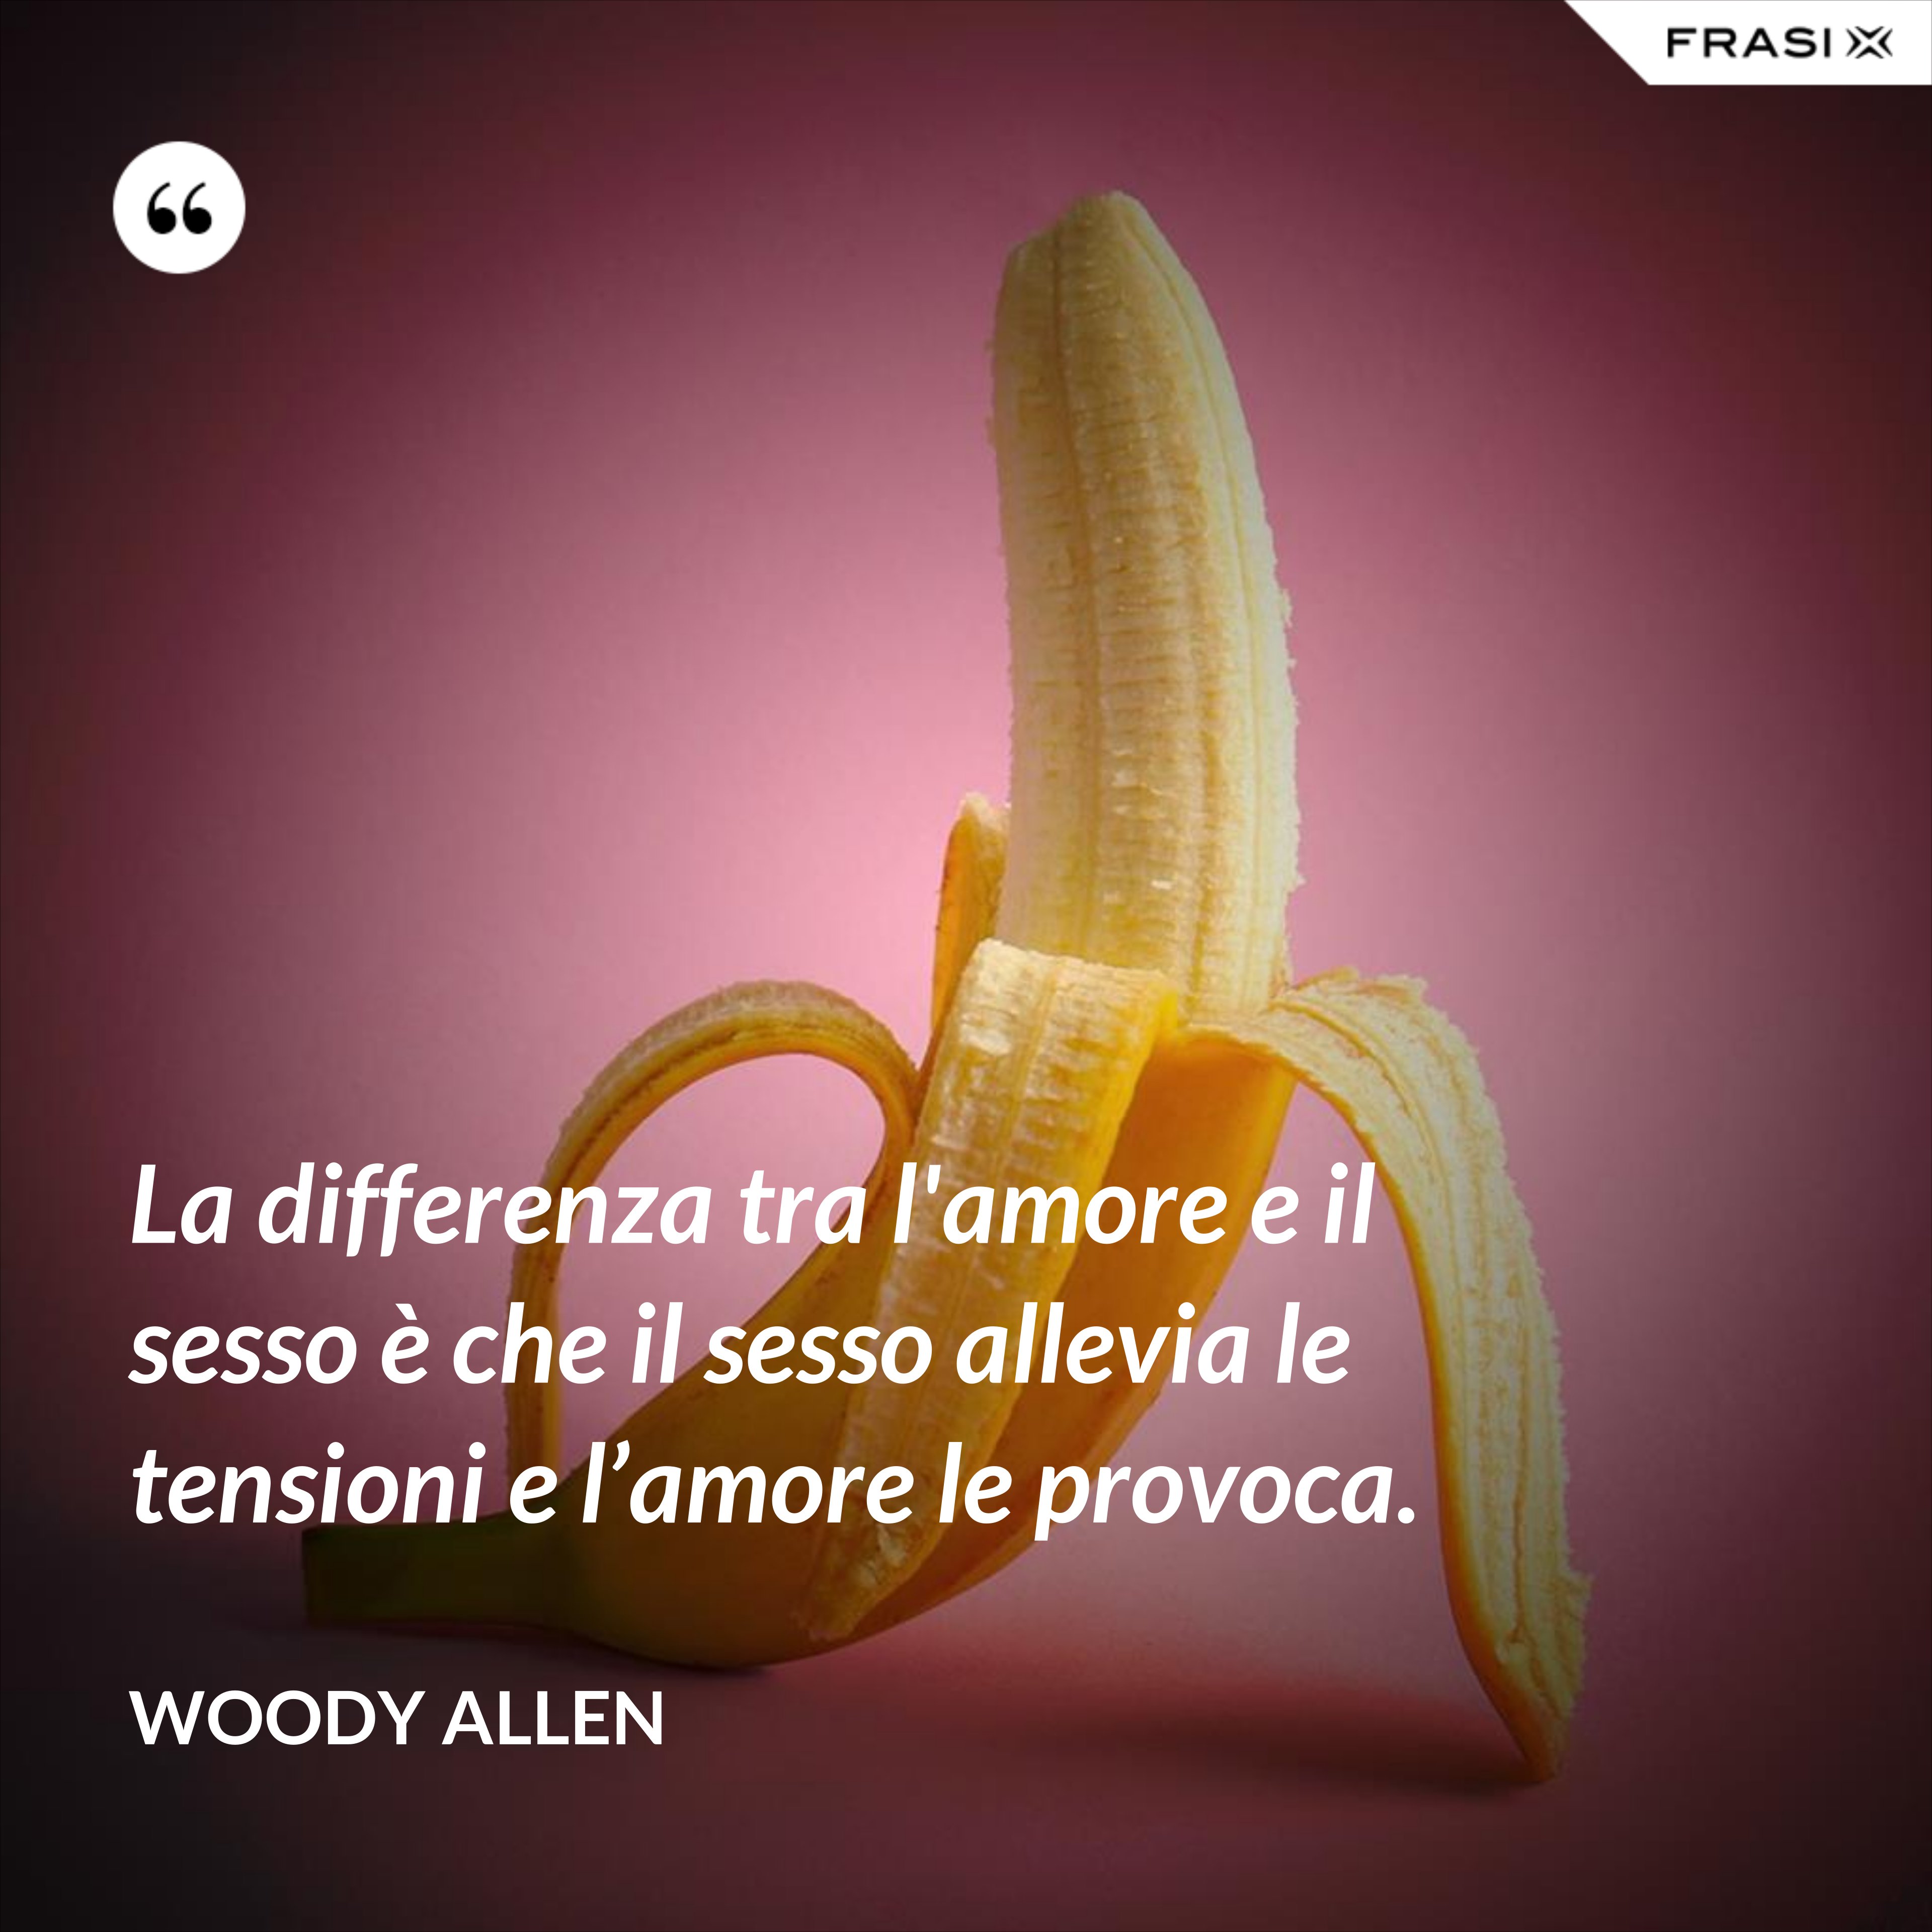 La differenza tra l'amore e il sesso è che il sesso allevia le tensioni e l’amore le provoca. - Woody Allen